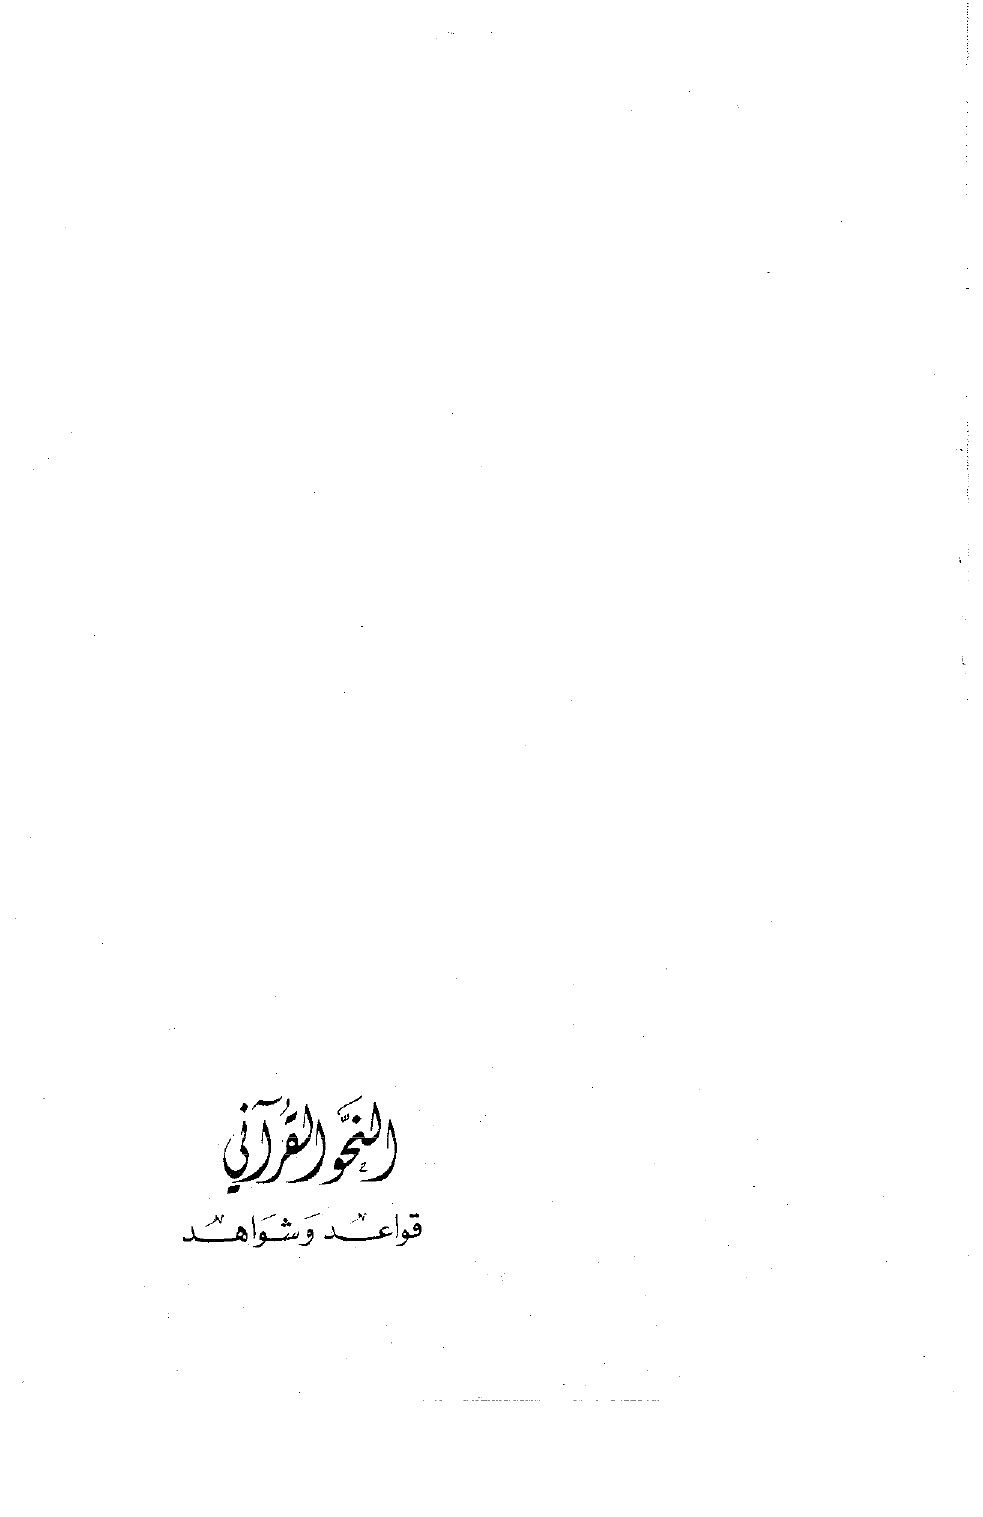 تنزيل وتحميل كتاِب النحو القرآني -قواعد وشواهد pdf برابط مباشر مجاناً 